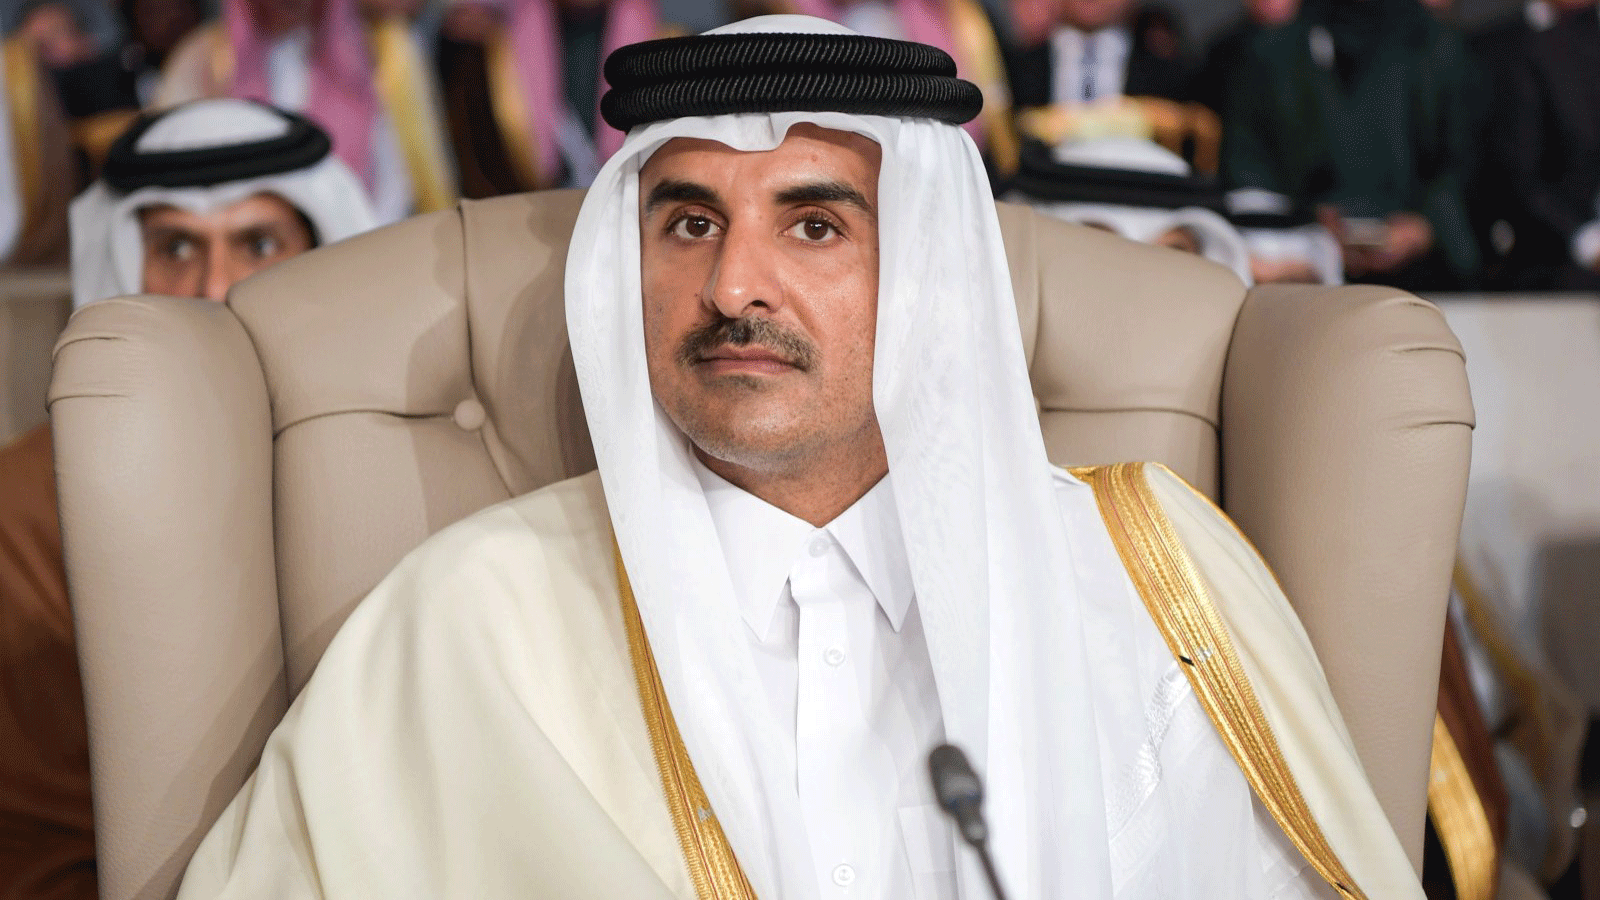 أمير قطر الشيخ تميم بن حمد آل ثاني يحضر الجلسة الافتتاحية للقمة الثلاثين لجامعة الدول العربية في العاصمة التونسية. 31 آذار/ مارس 2019.